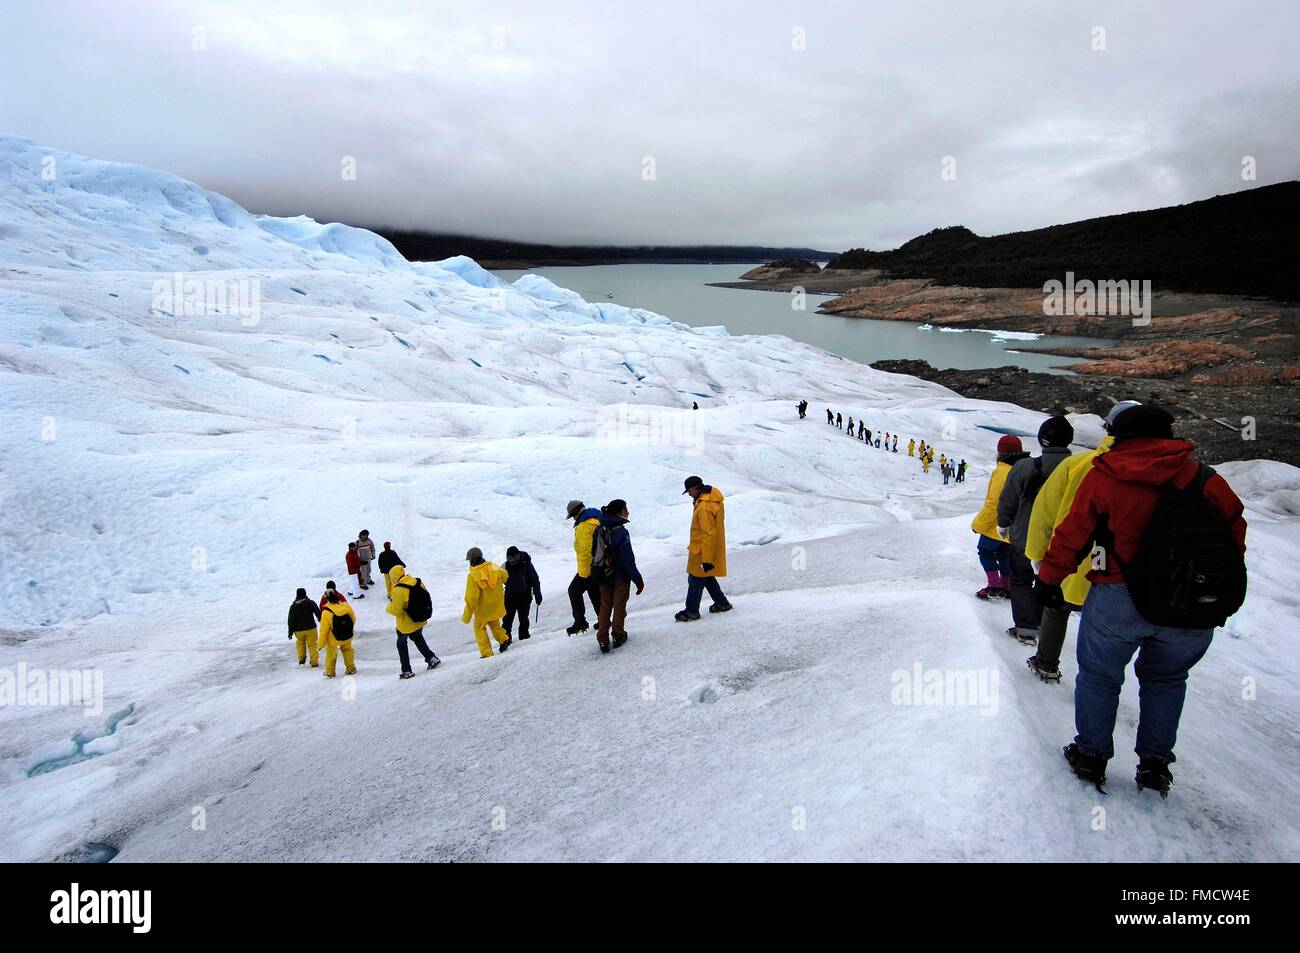 Argentina, Patagonia, Santa Cruz province, Parque Nacional Los Glaciares, Perito Moreno glacier, expedition of tourists on the Stock Photo